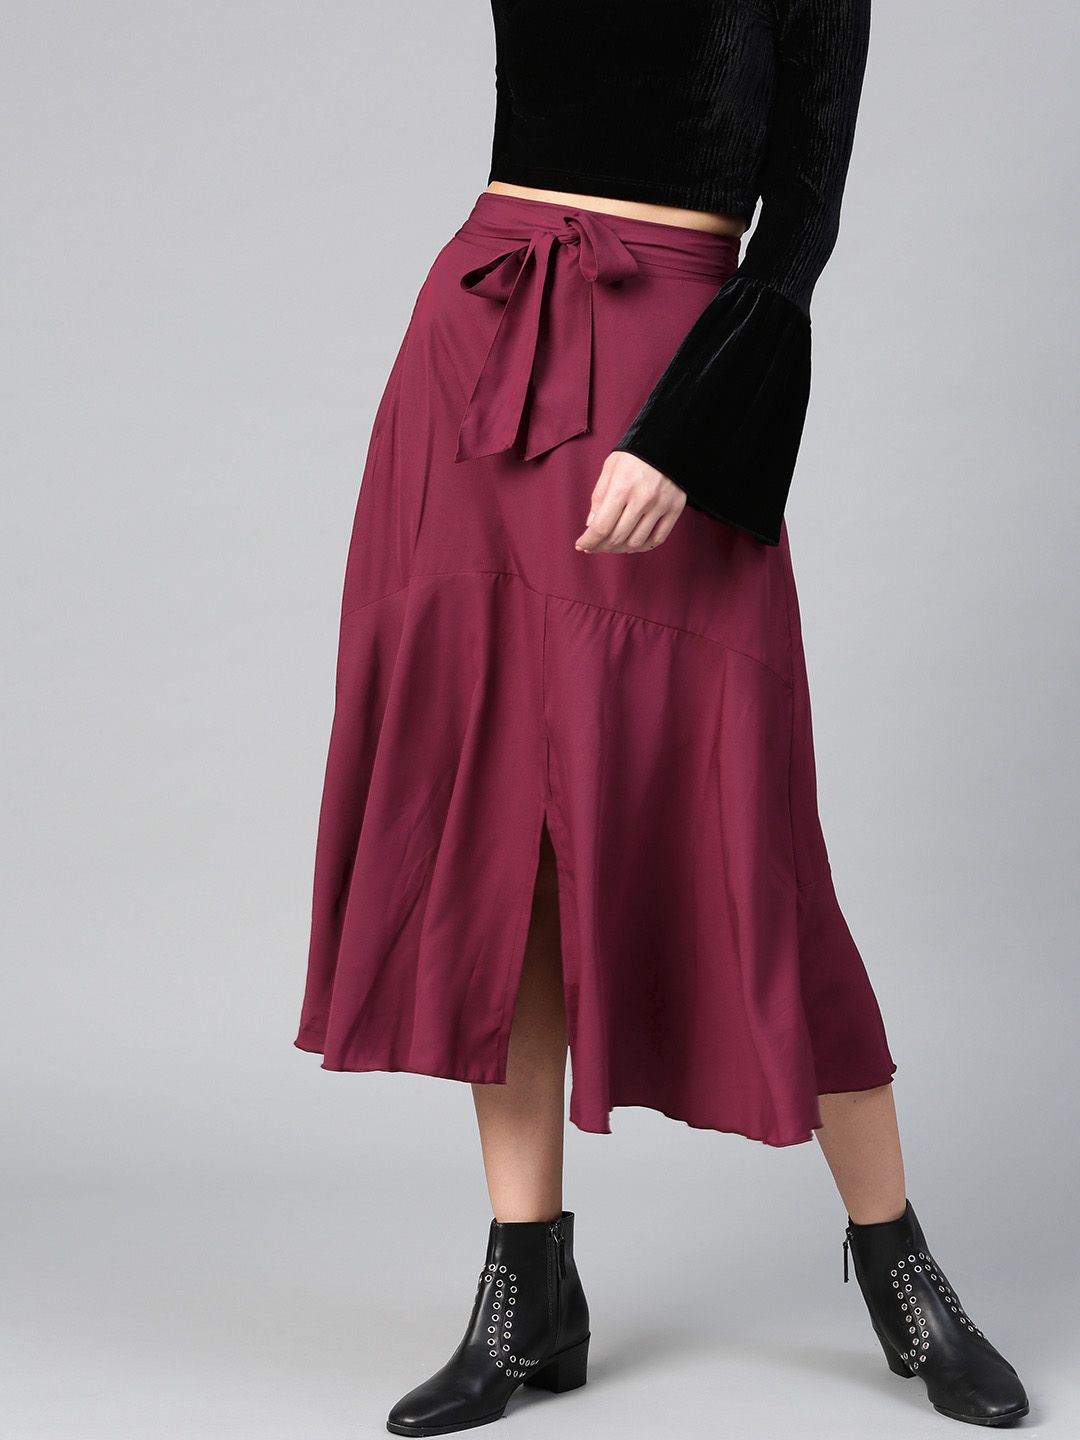 burgundy a line skirt